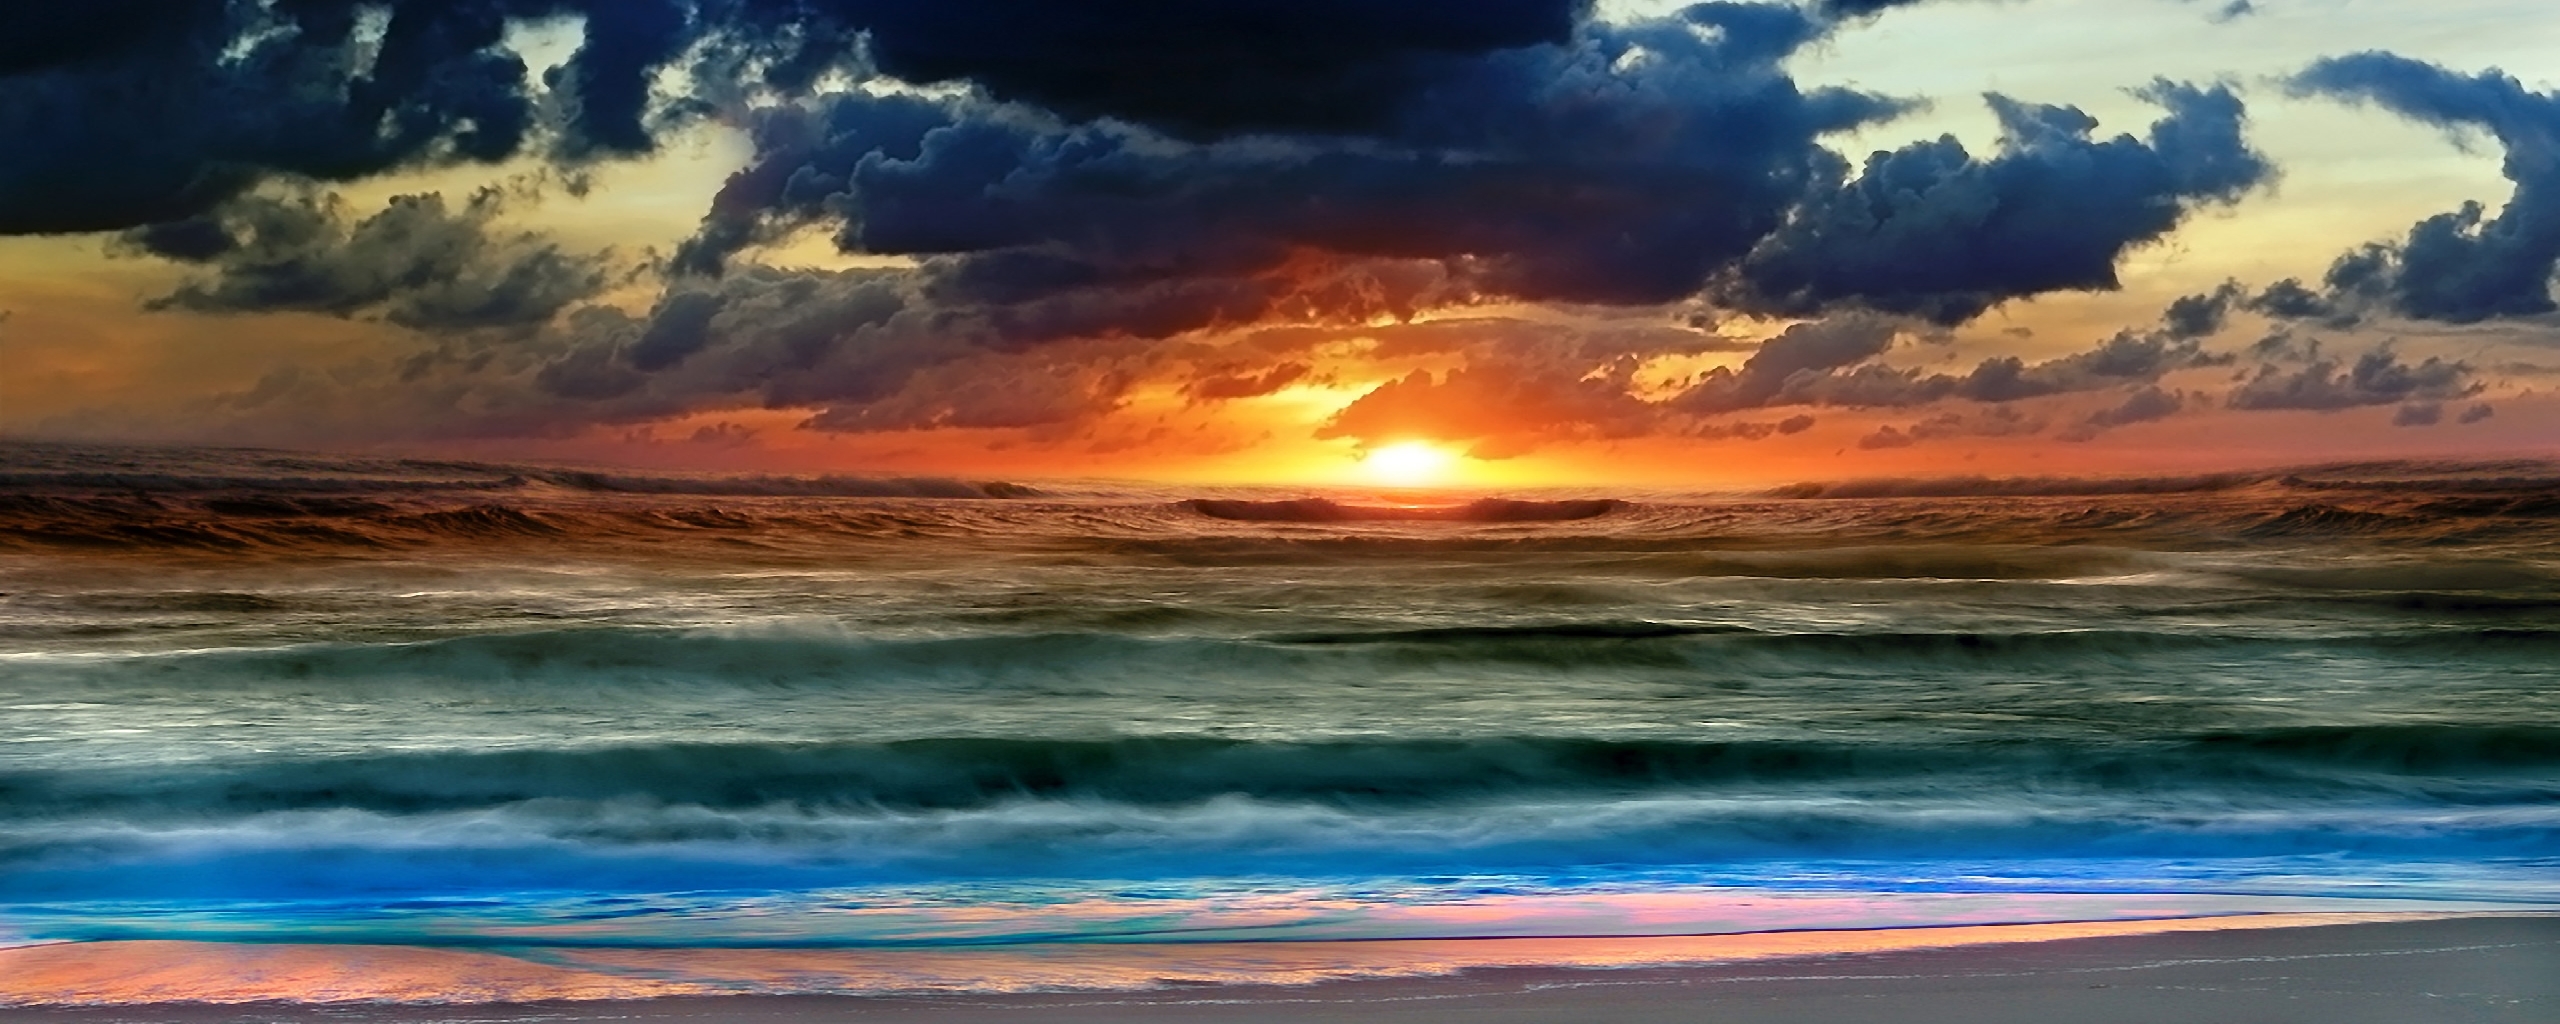 panoramic desktop wallpaper dual monitors,sky,horizon,body of water,nature,afterglow